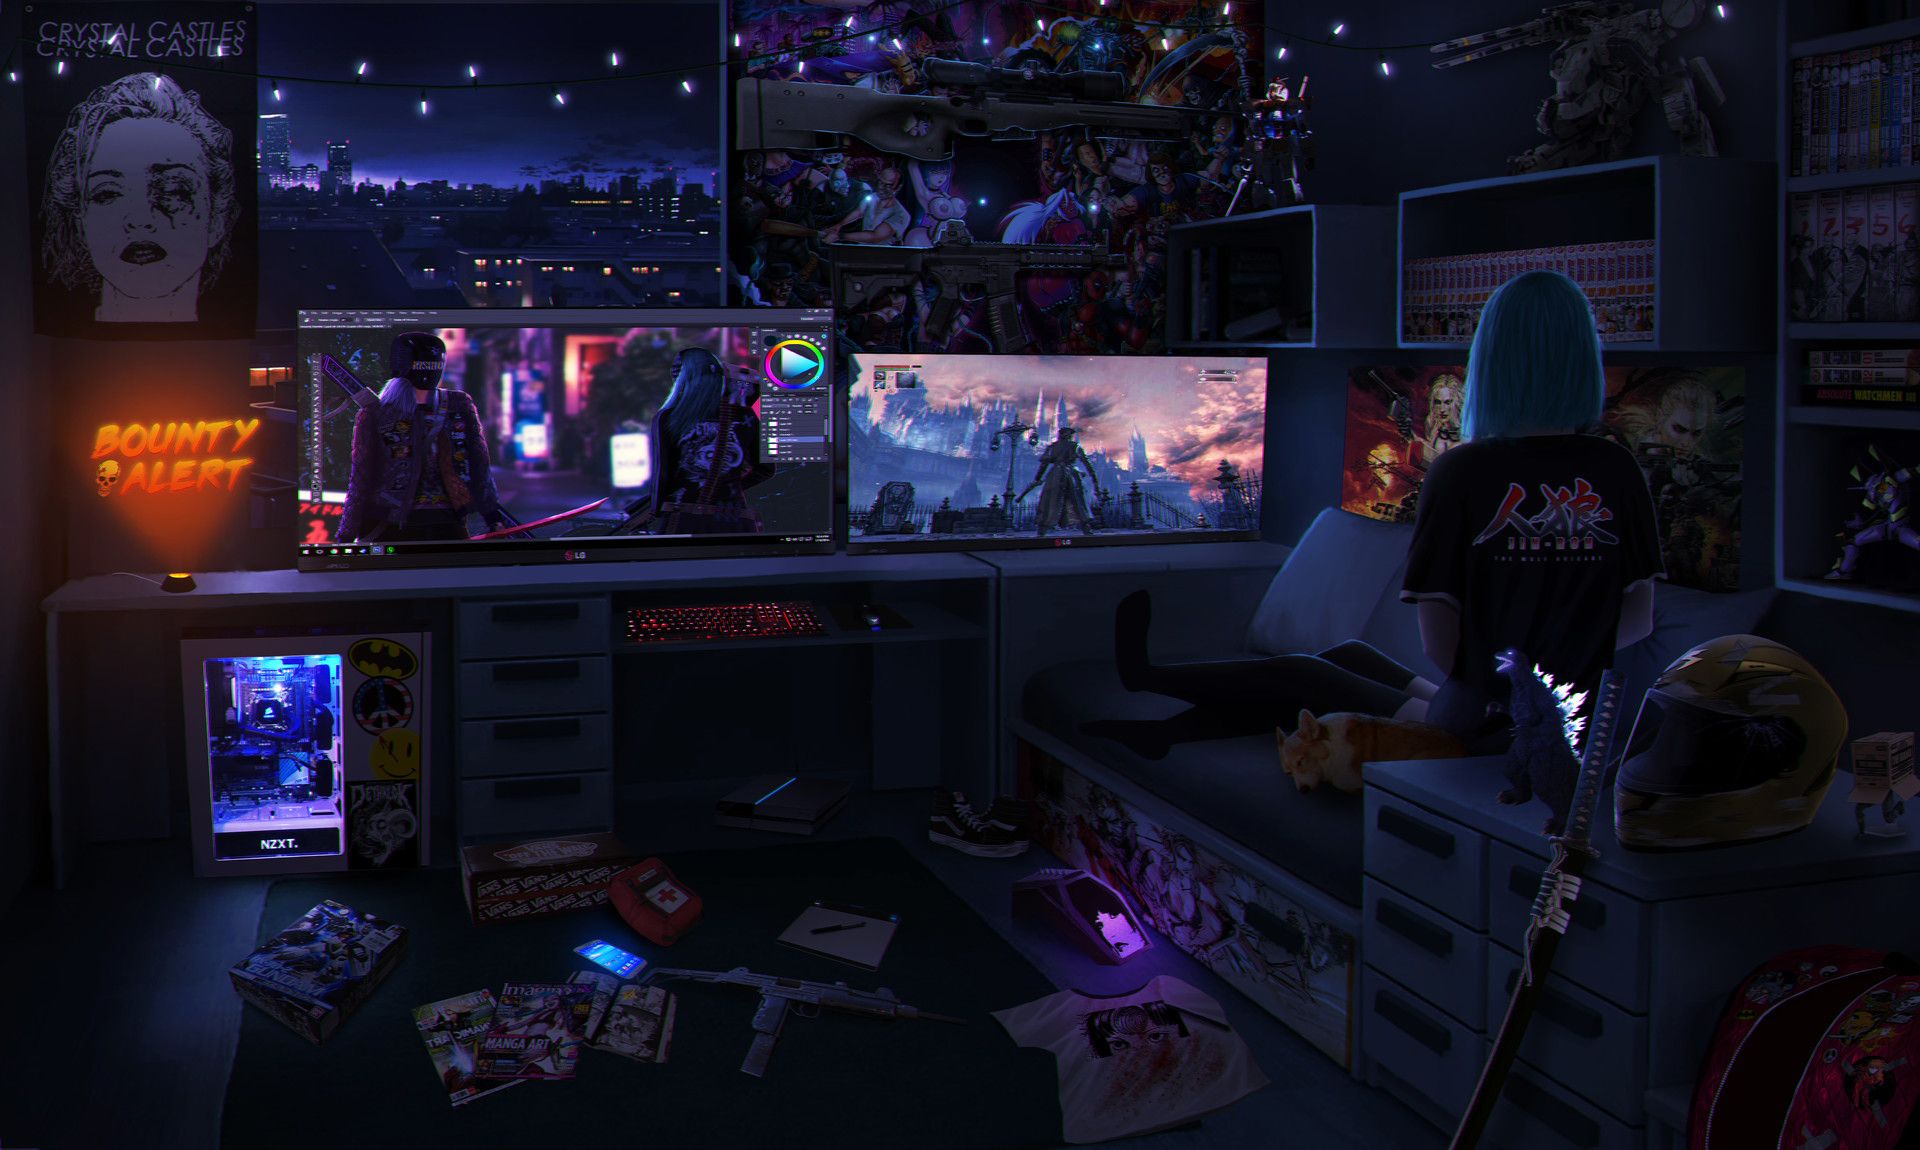 Character Room design, landen woodall. Cyberpunk room, Cyberpunk aesthetic, Cyberpunk